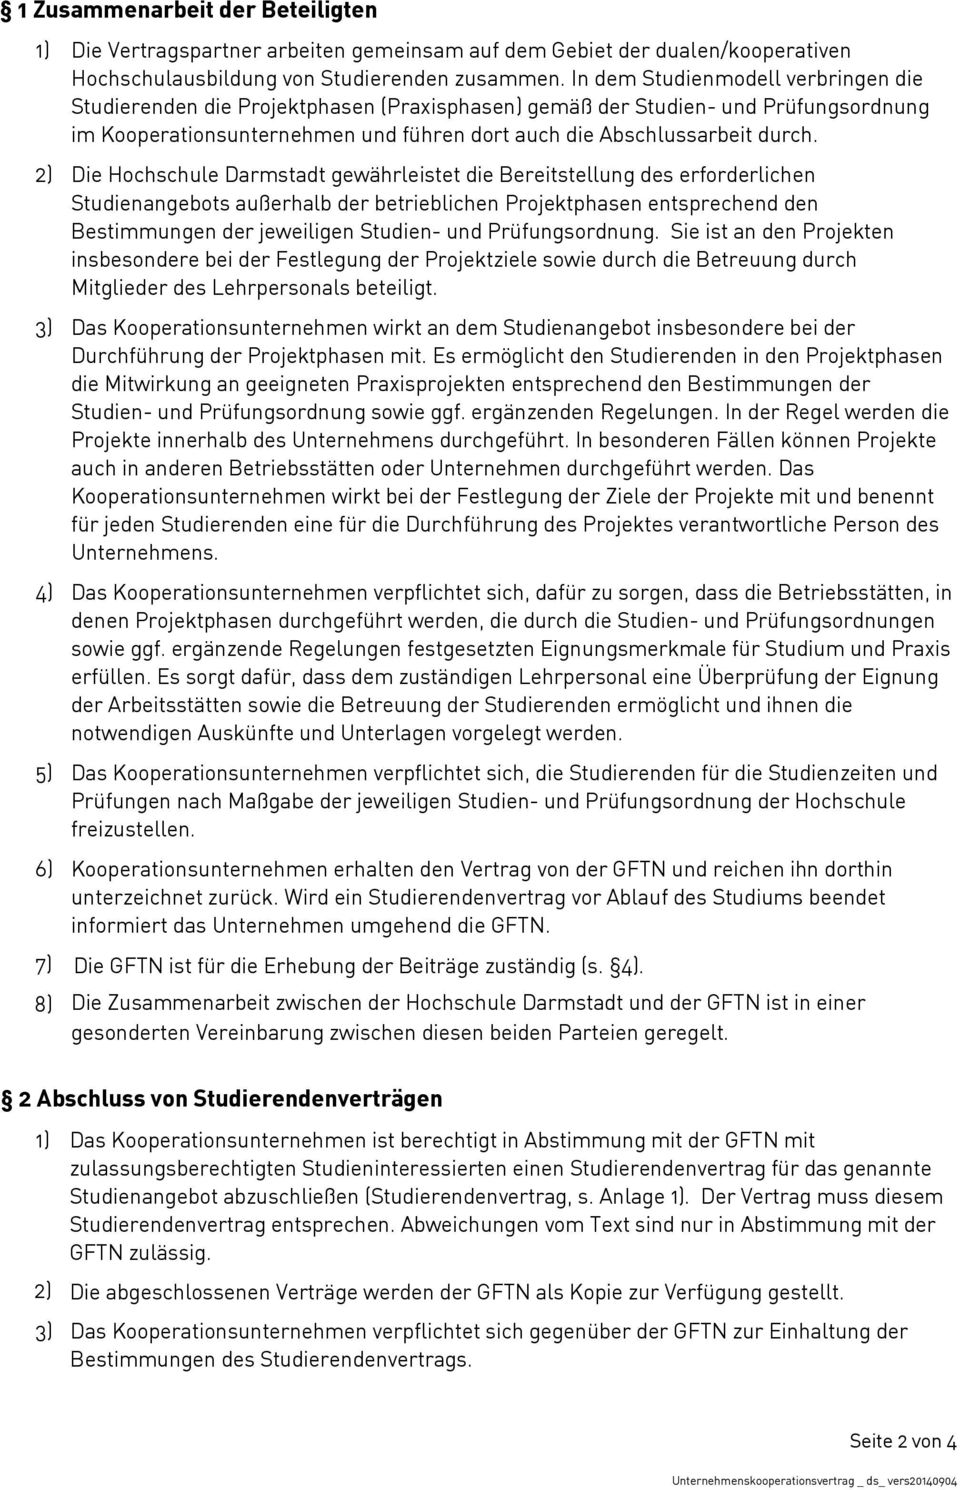 2) Die Hochschule Darmstadt gewährleistet die Bereitstellung des erforderlichen Studienangebots außerhalb der betrieblichen Projektphasen entsprechend den Bestimmungen der jeweiligen Studien- und